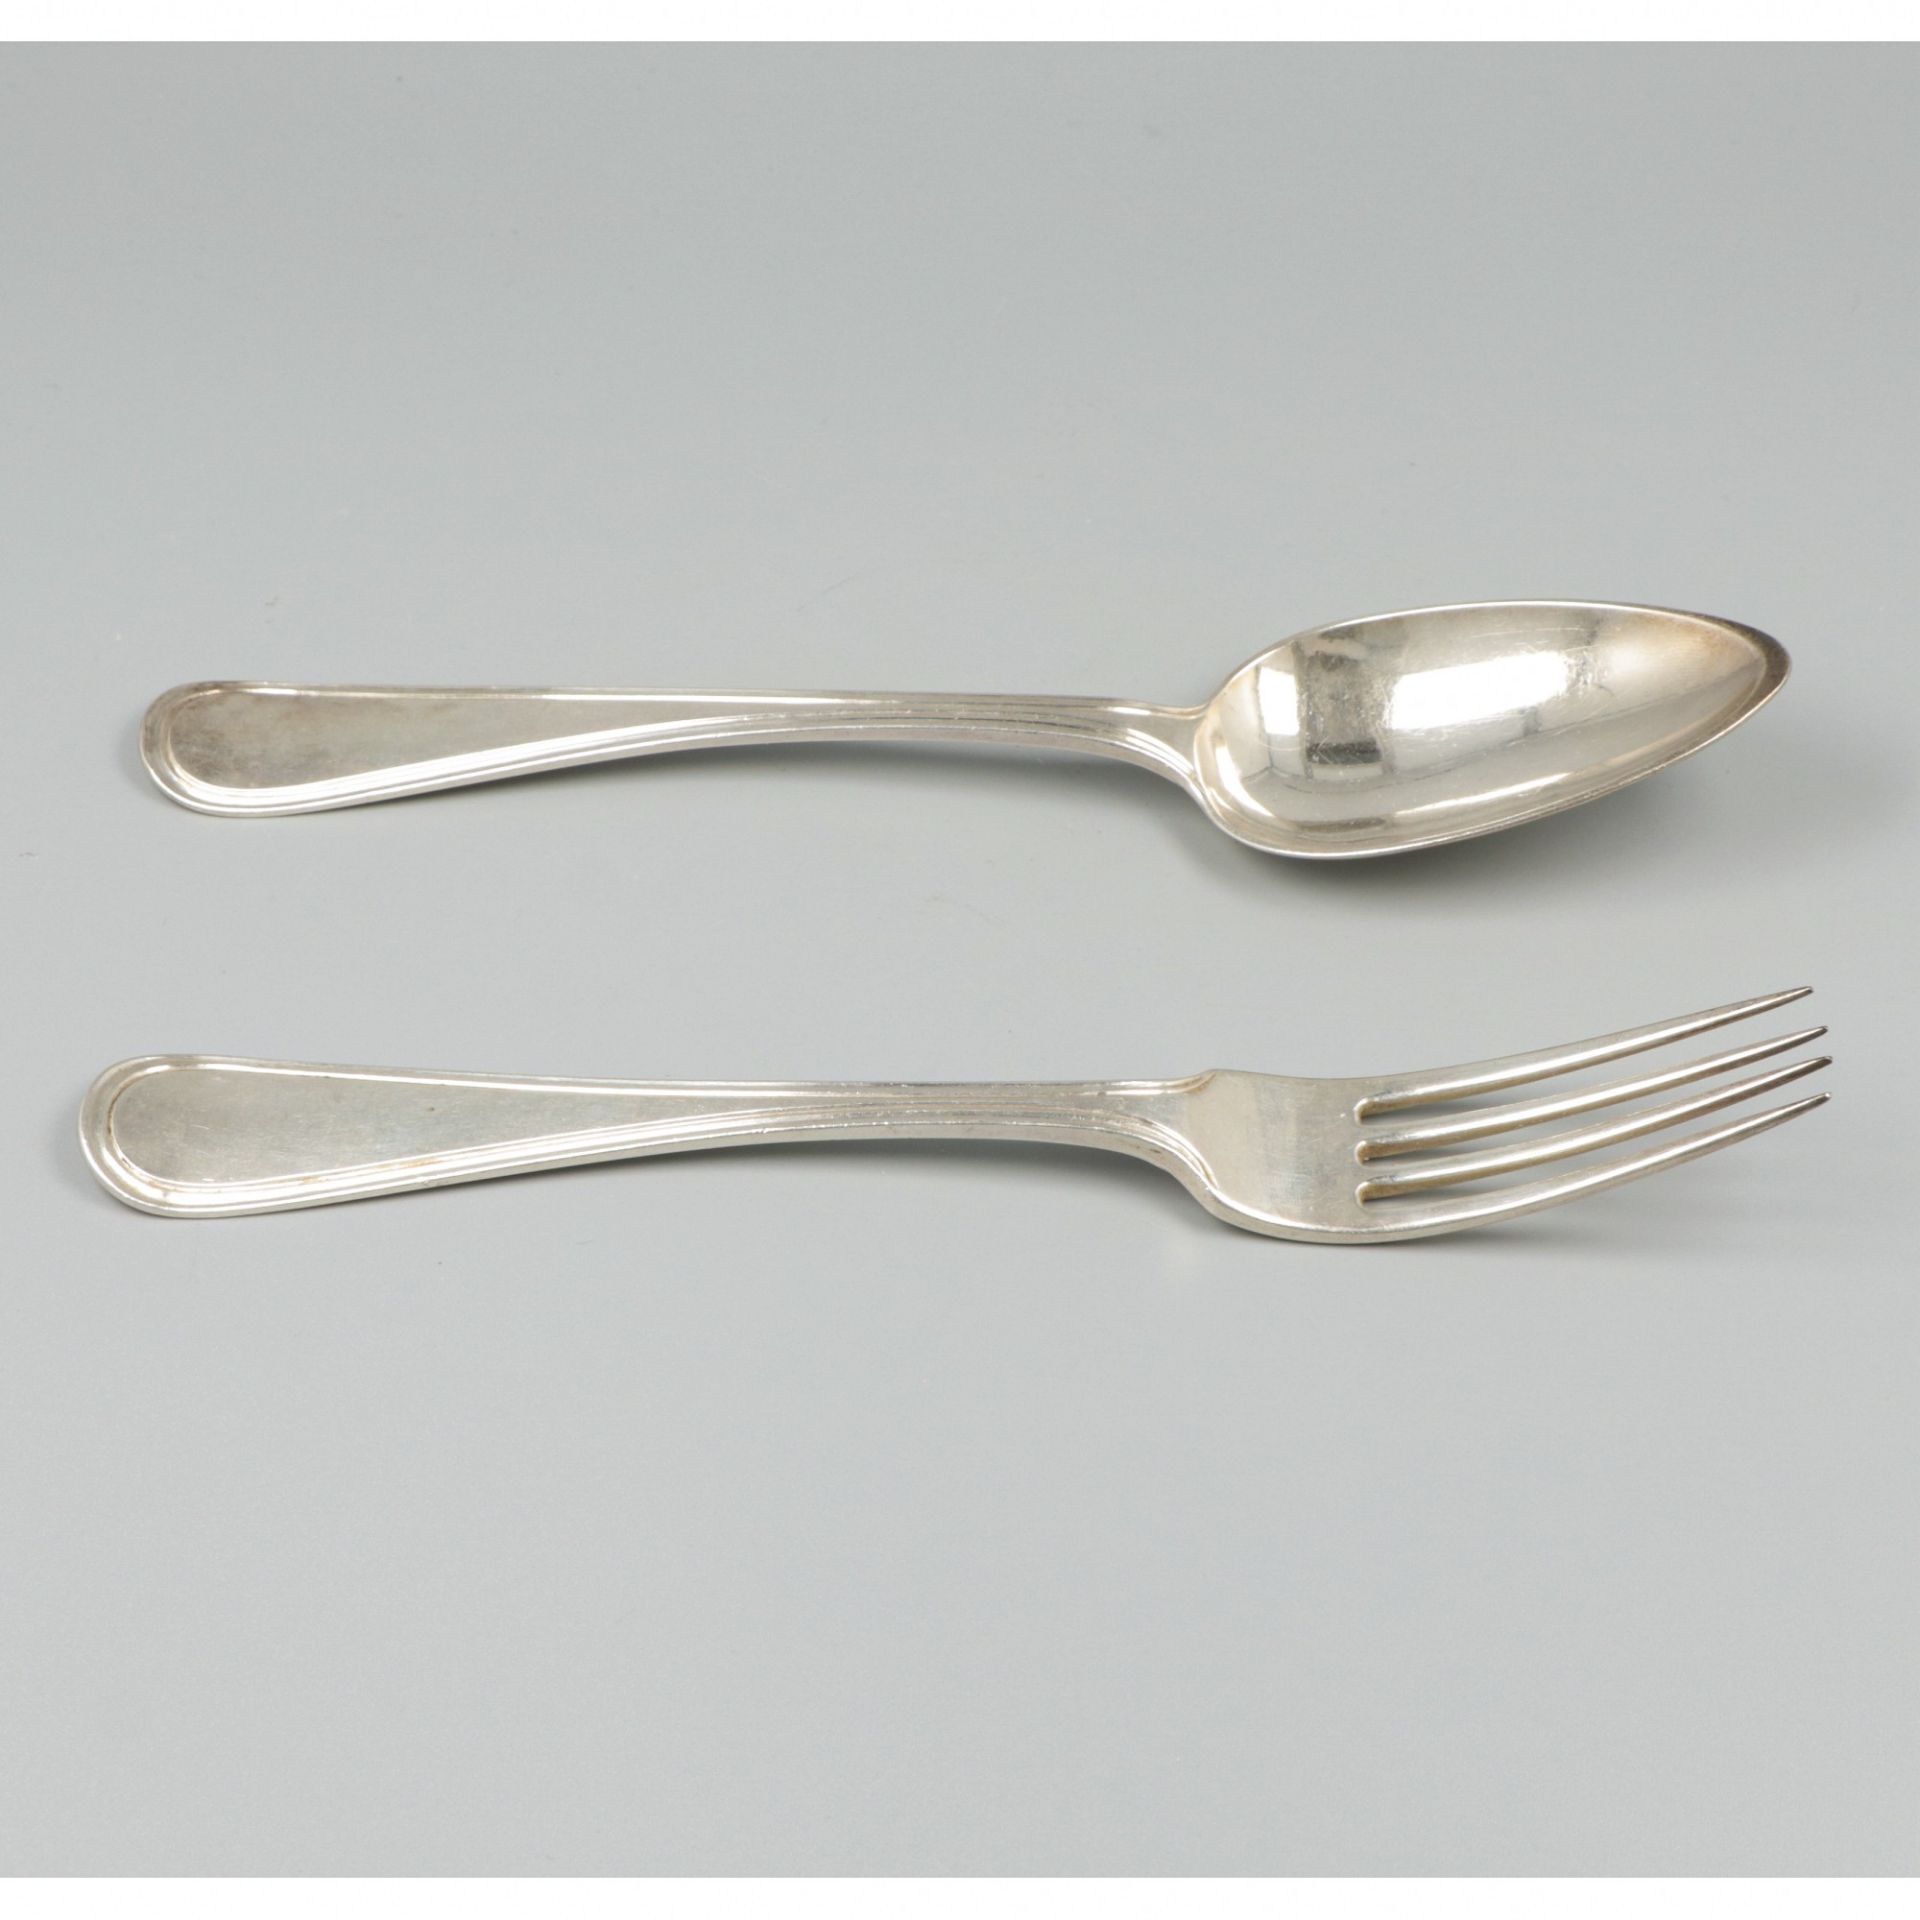 Silver dinner spoon and fork, Pieter Las van Bennekom, Amsterdam 1820. - Image 3 of 6